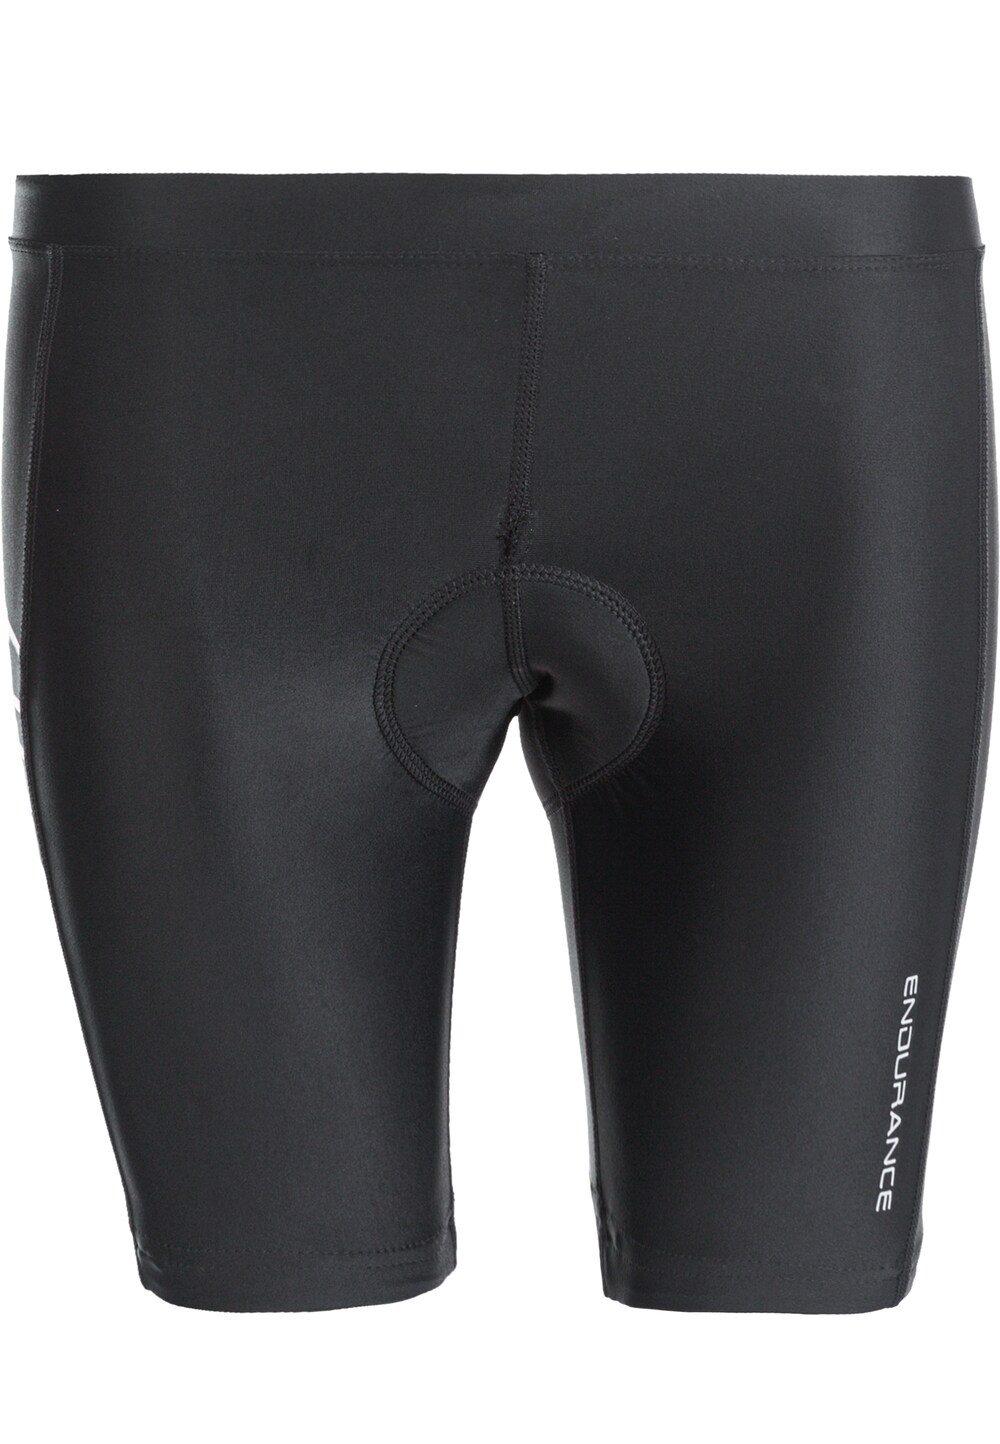 Обычные тренировочные брюки Endurance Gorsk Jr., черный обычные тренировочные брюки endurance detlom черный